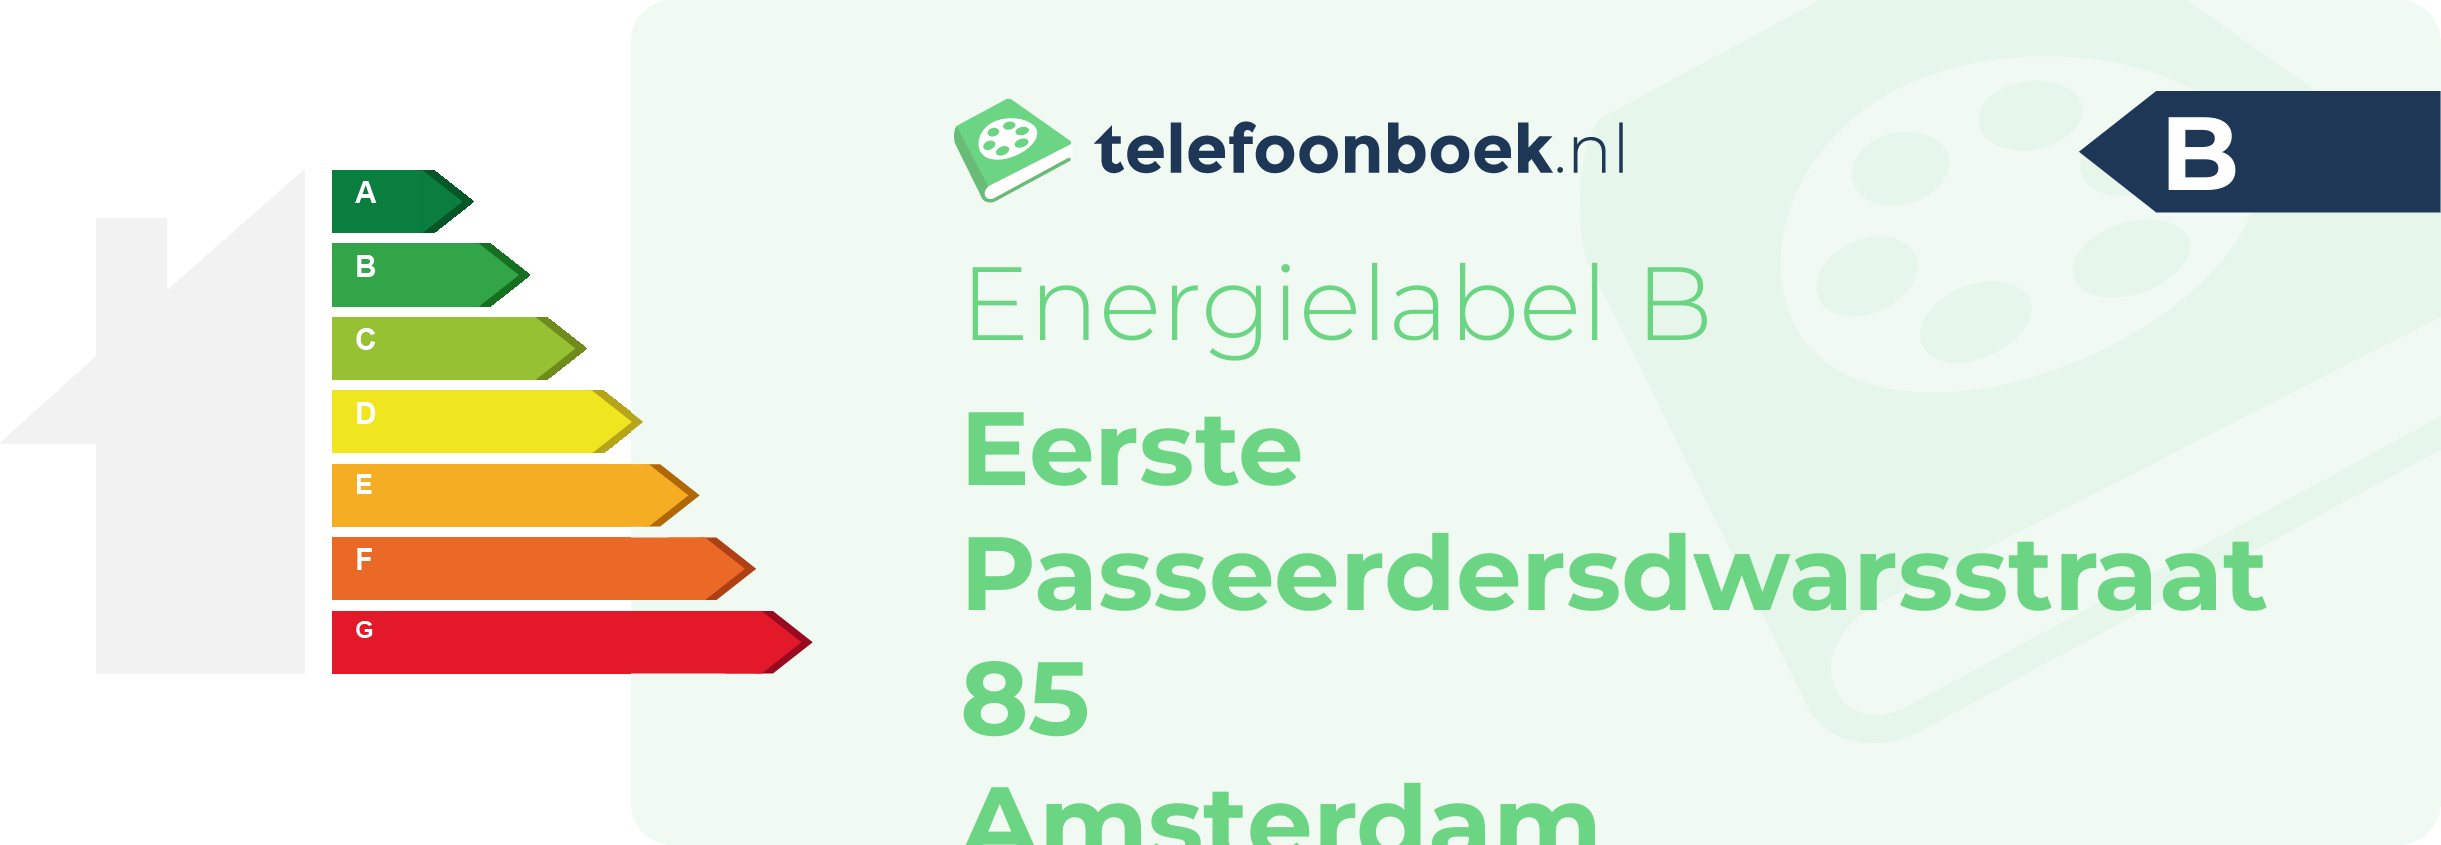 Energielabel Eerste Passeerdersdwarsstraat 85 Amsterdam